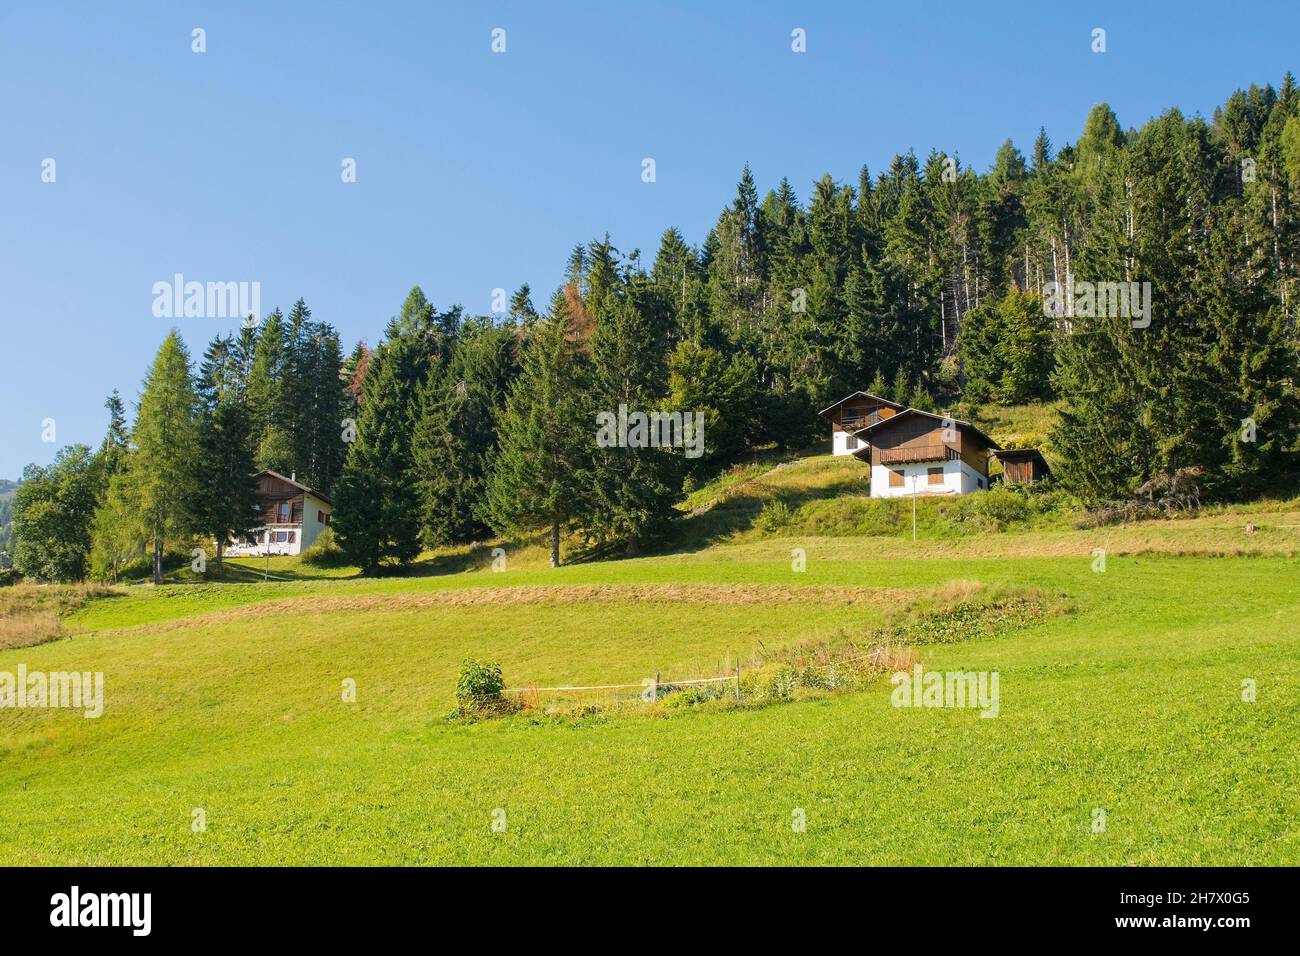 The late summer landscape near the Alpine village of Sauris di Sopra, Udine Province, Friuli-Venezia Giulia, north east Italy Stock Photo